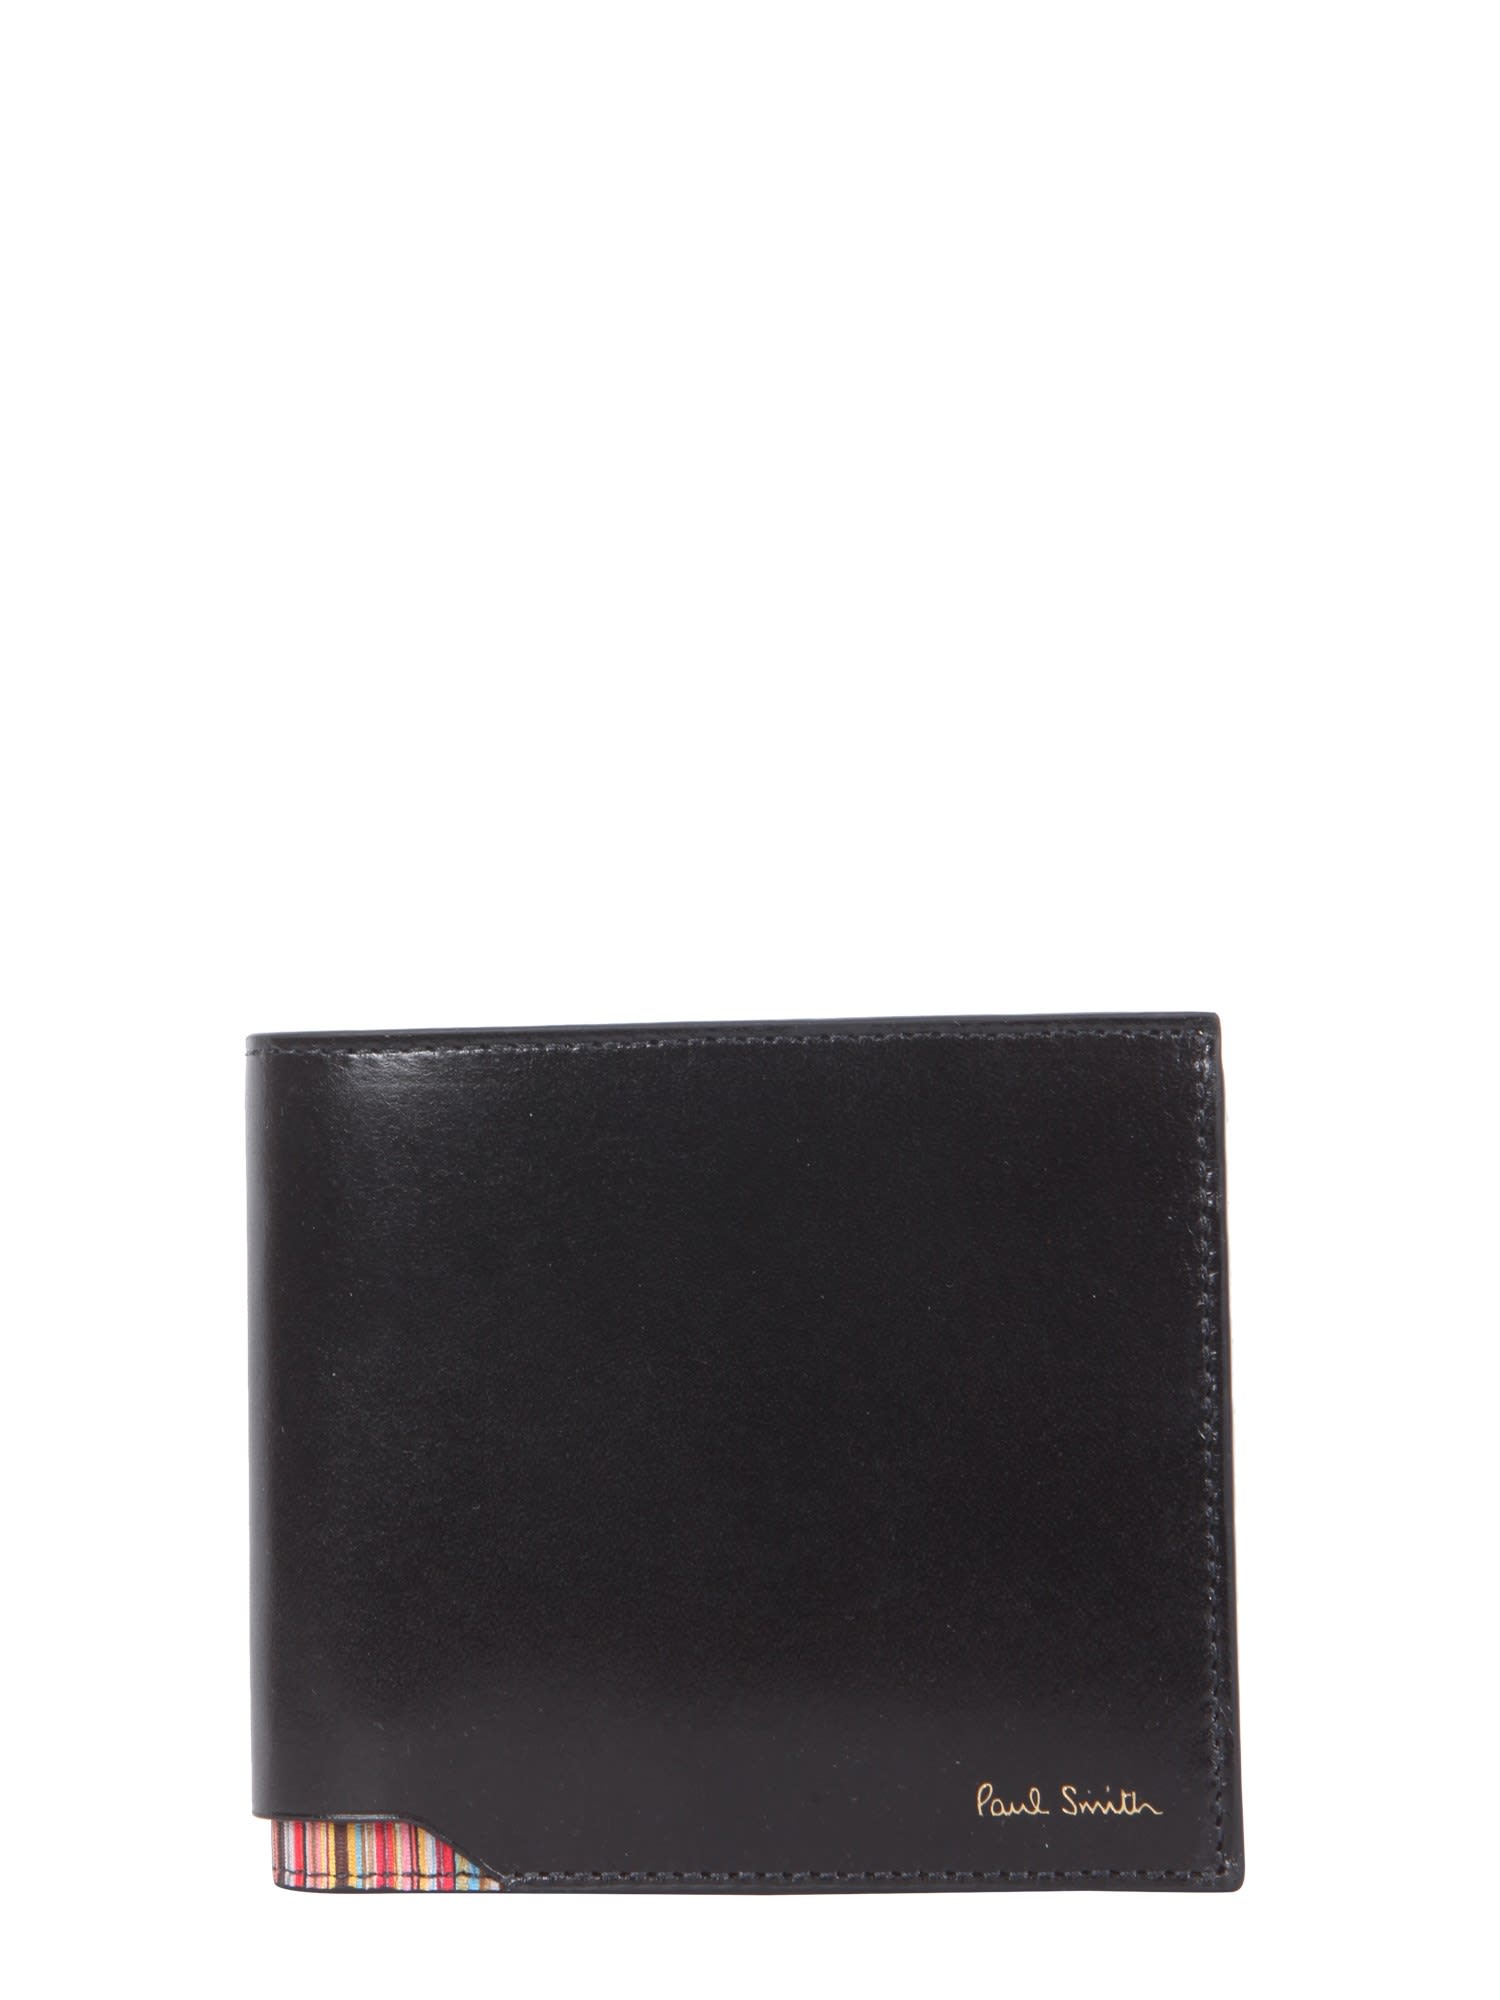 Paul Smith Bi Fold Wallet